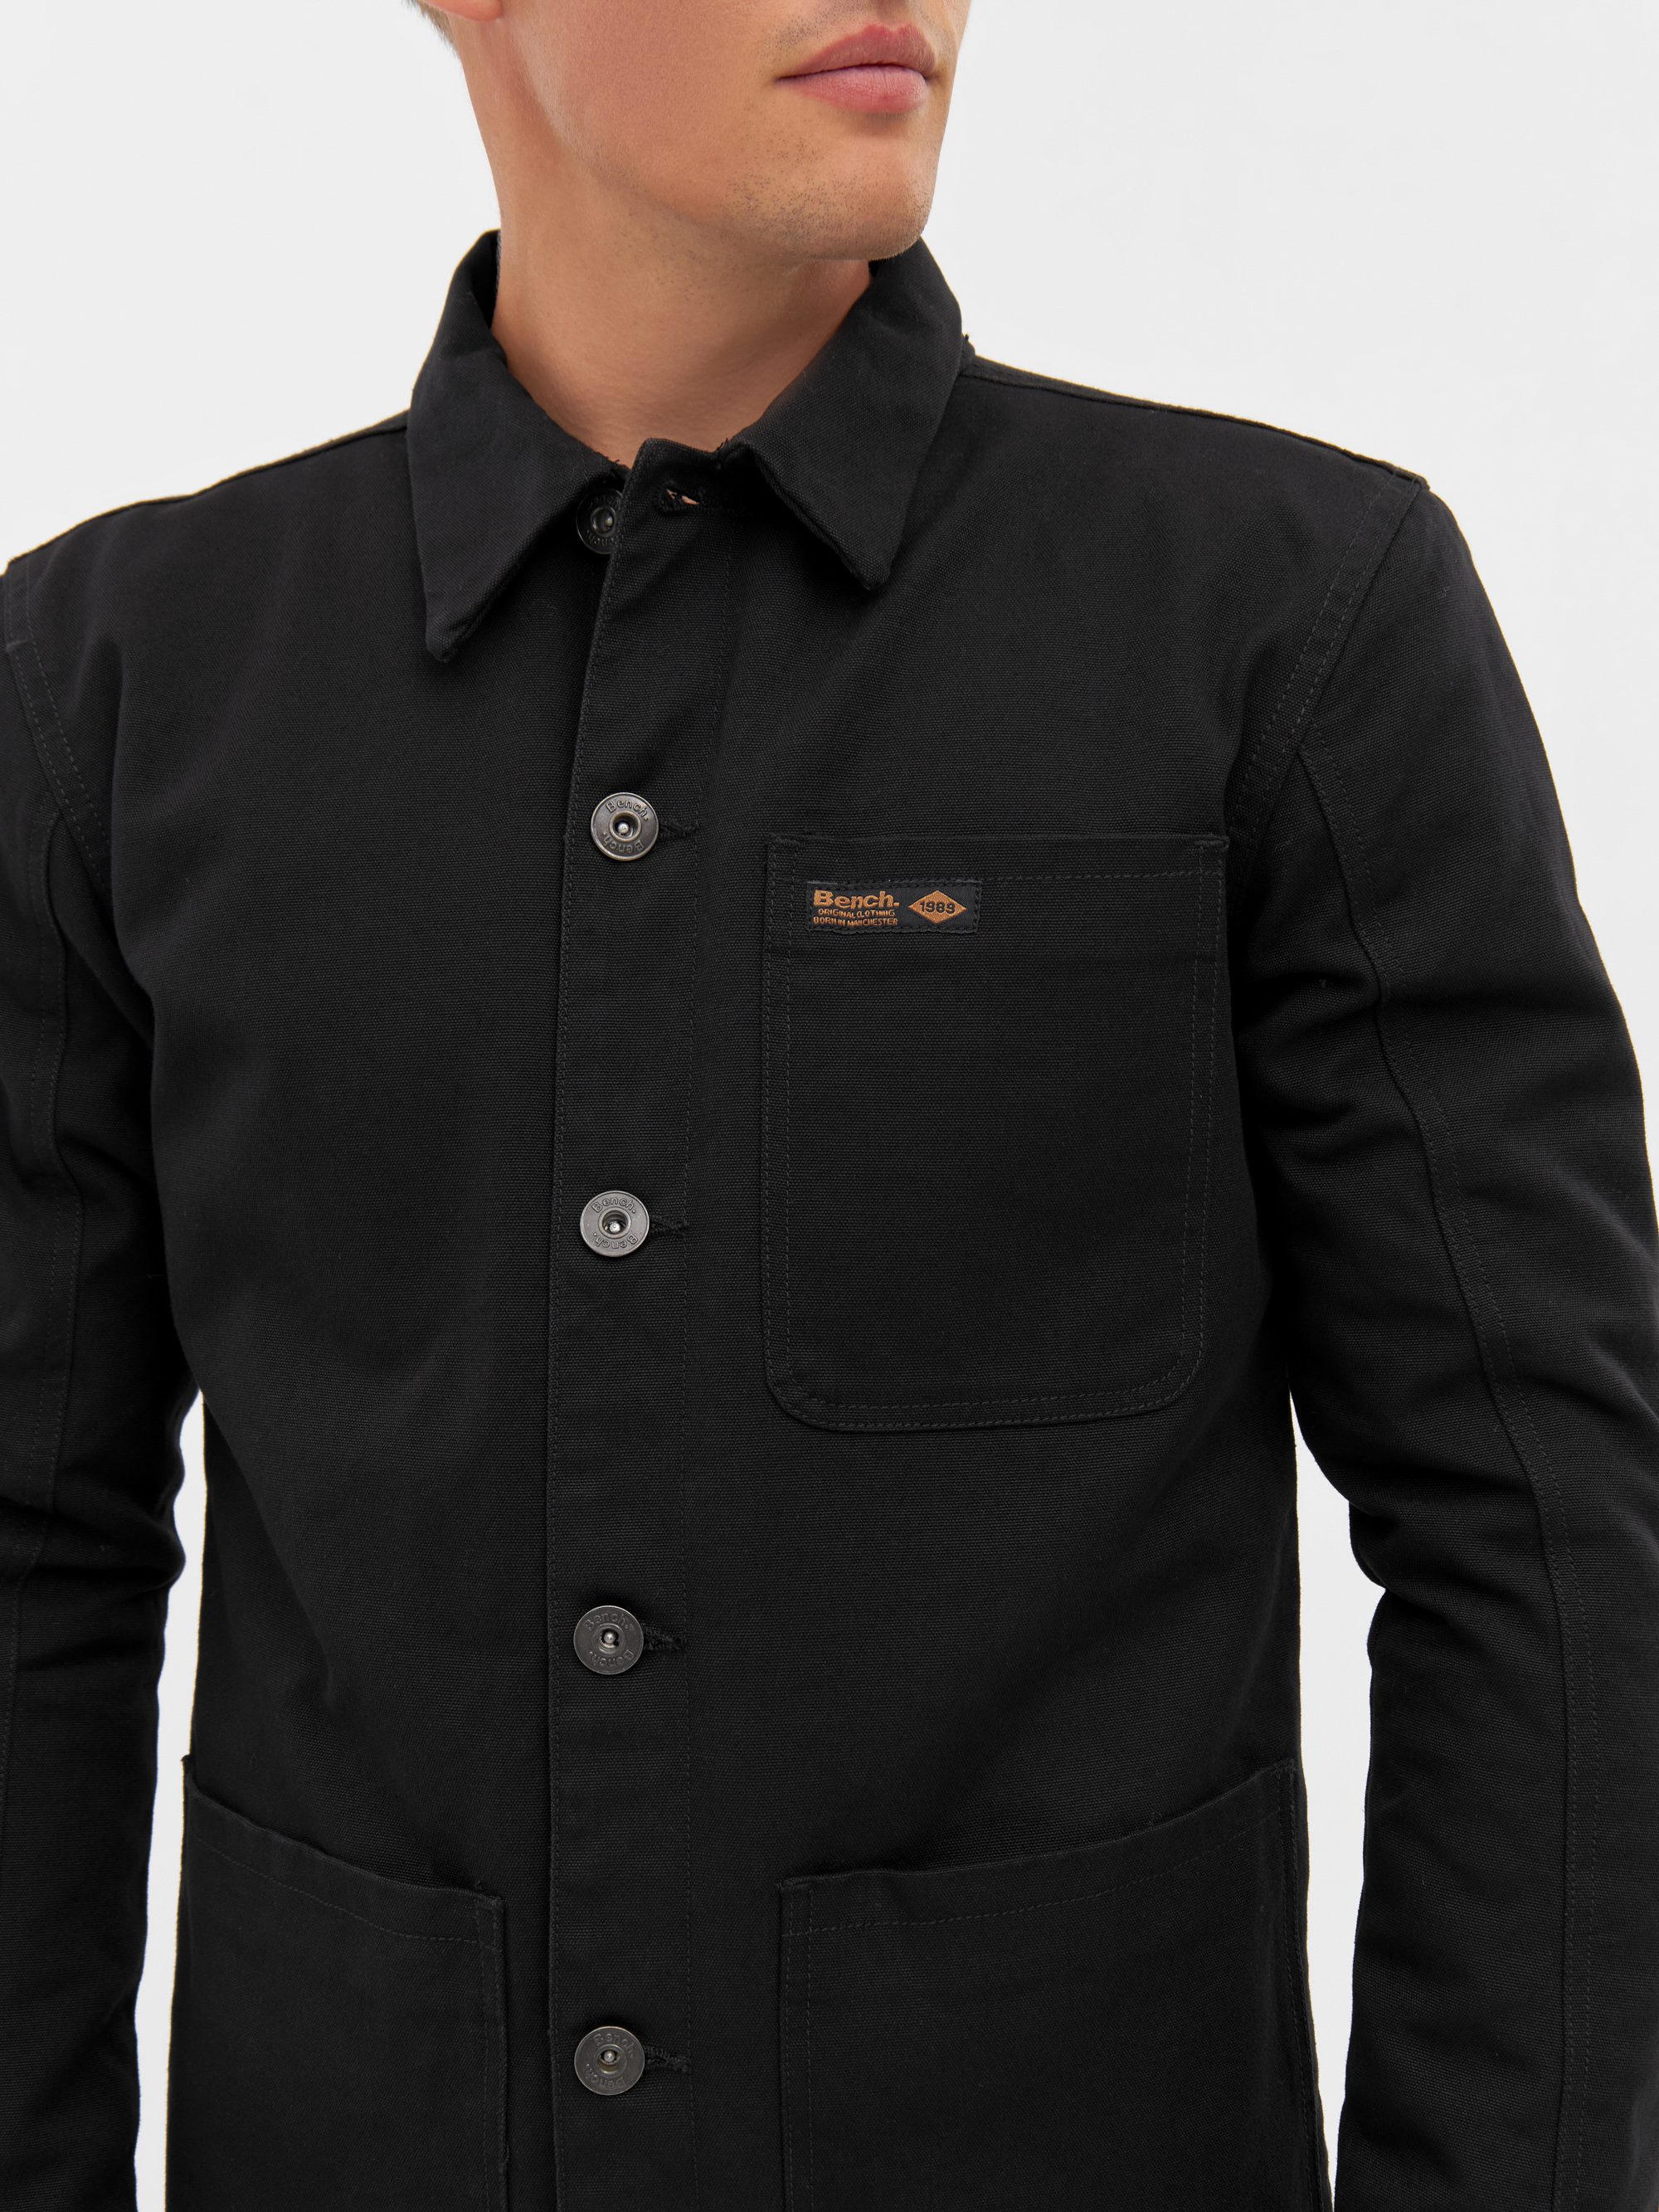 Bench Jacke black kaufen online